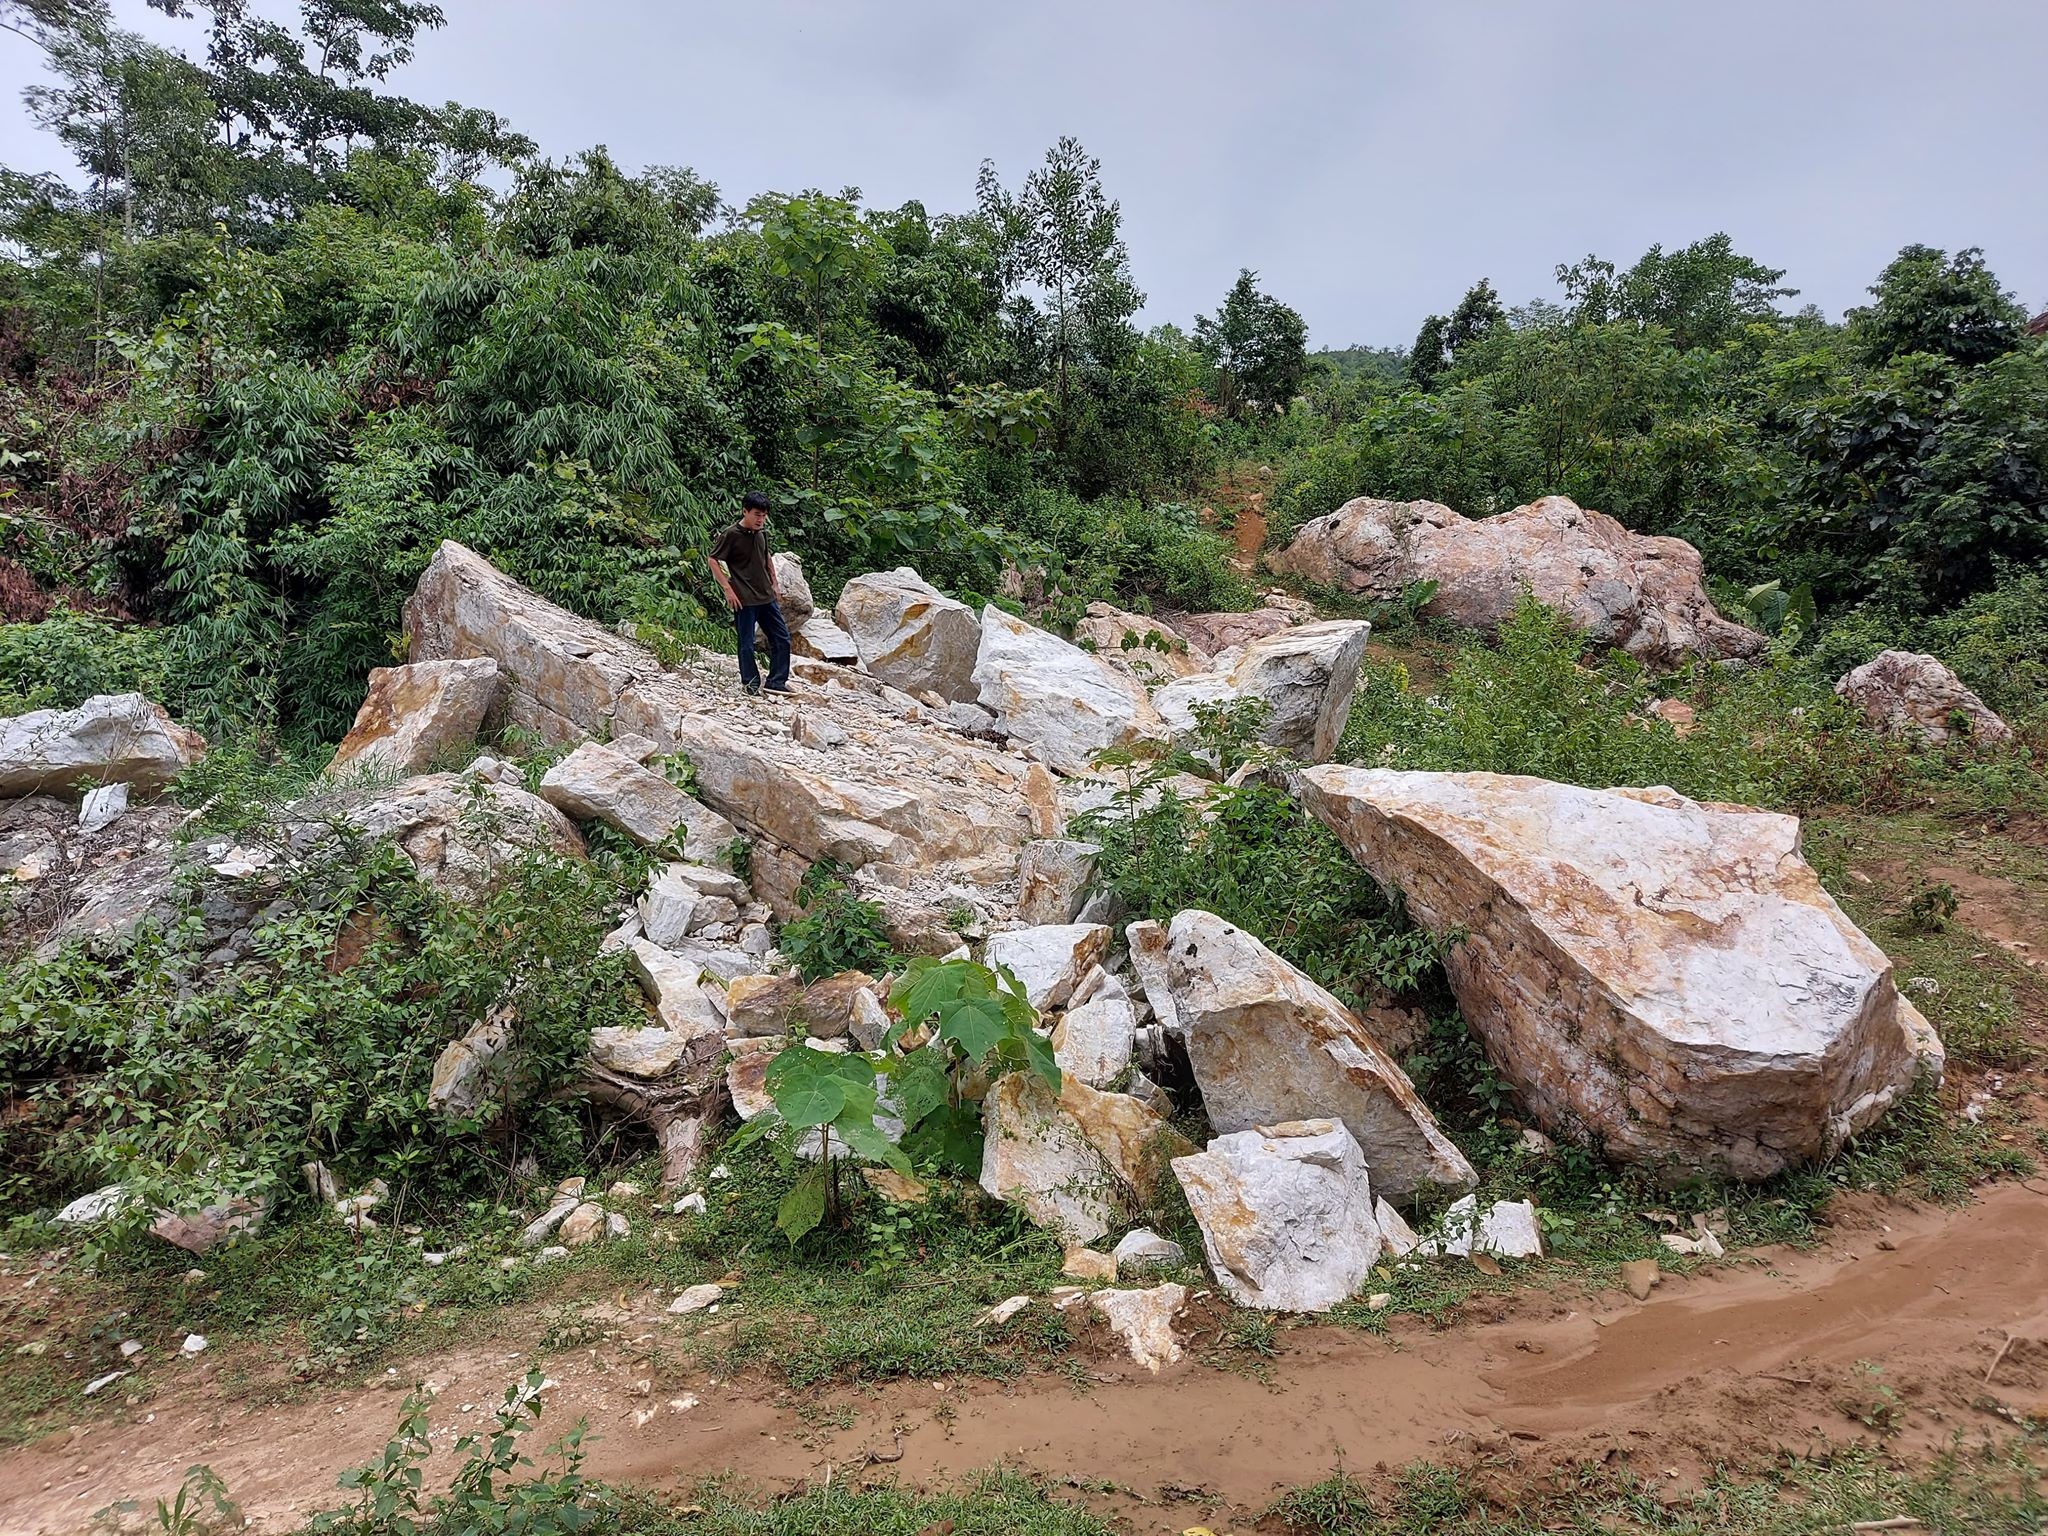 Trên hiện trường khai thác trái phép quặng đá ở xã Châu Hồng, có những vị trí cho thấy các đối tượng đã sử dụng tới vật liệu nổ. Ảnh: Nhật Lân